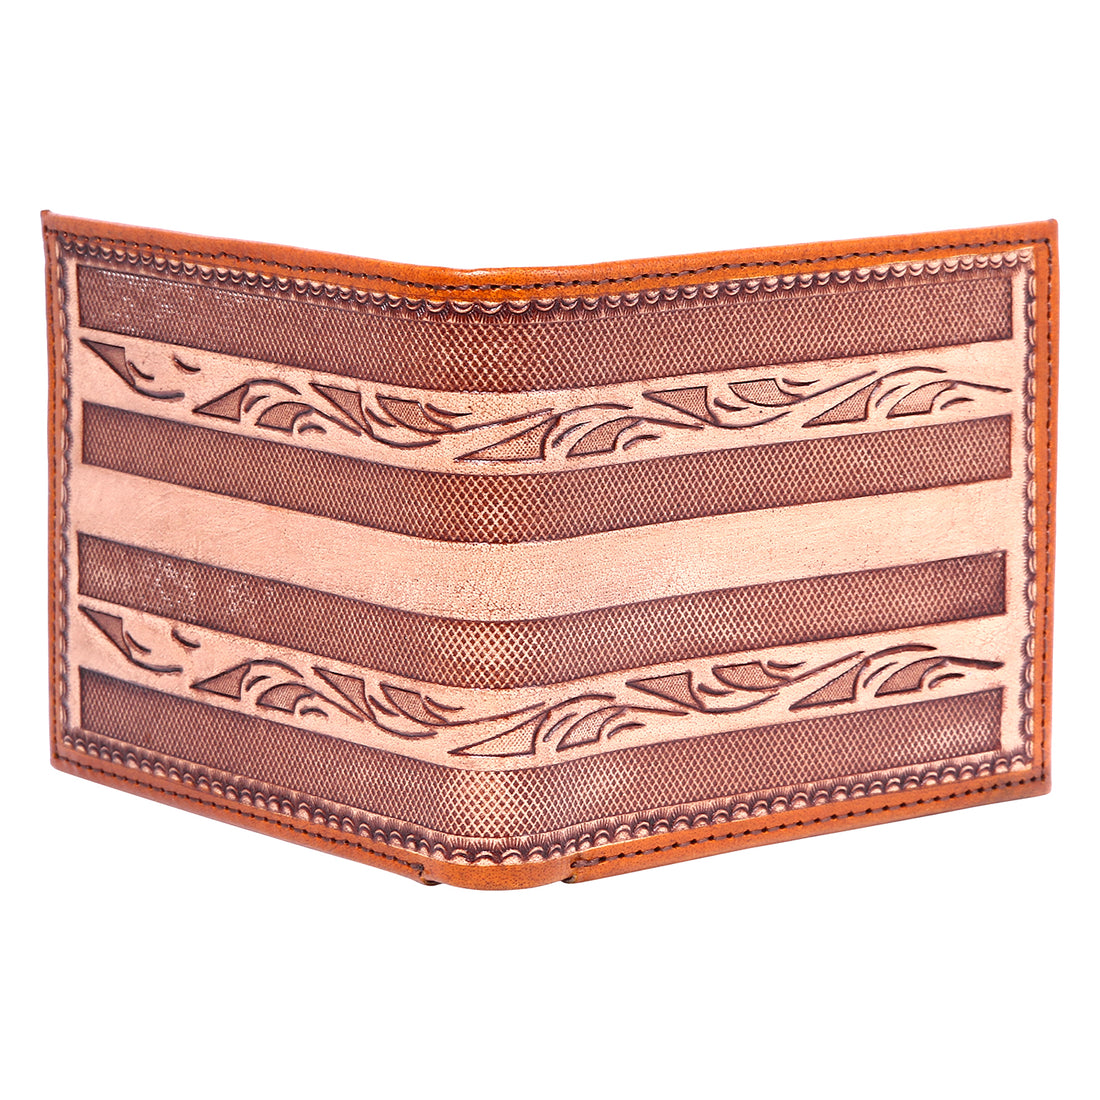 Hemener Men Brown Carved Genuine Leather Wallet